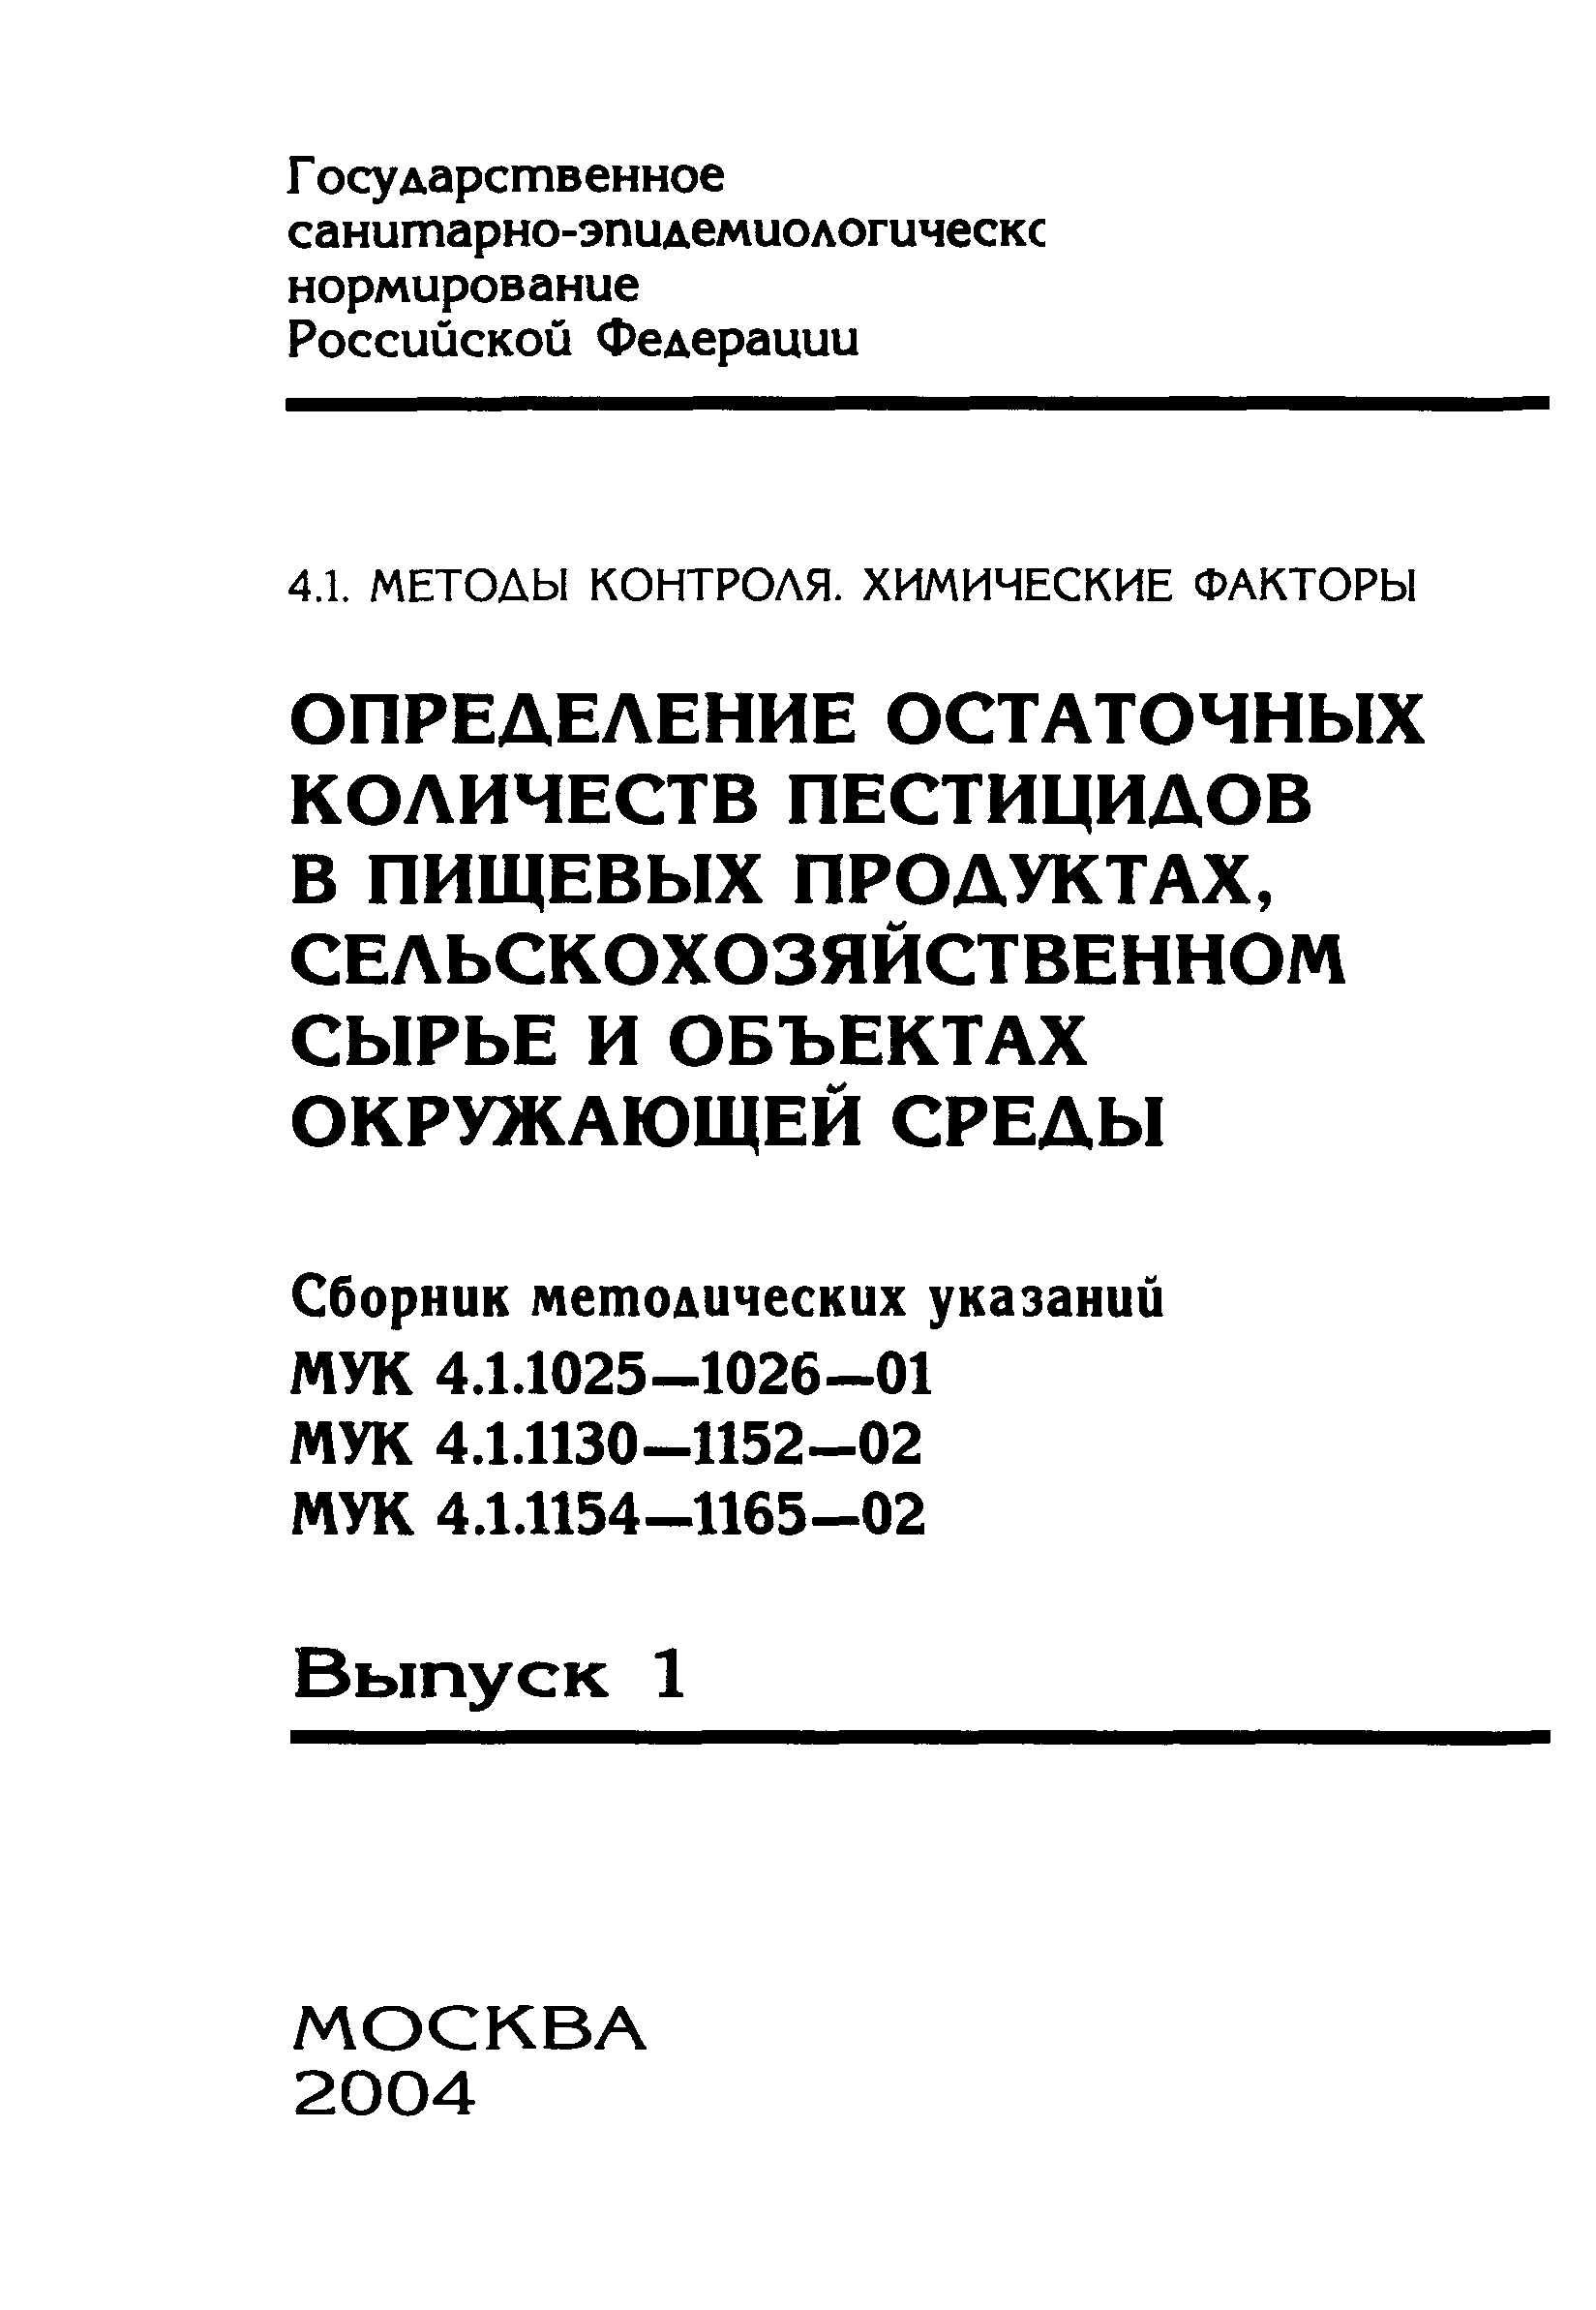 МУК 4.1.1148-02